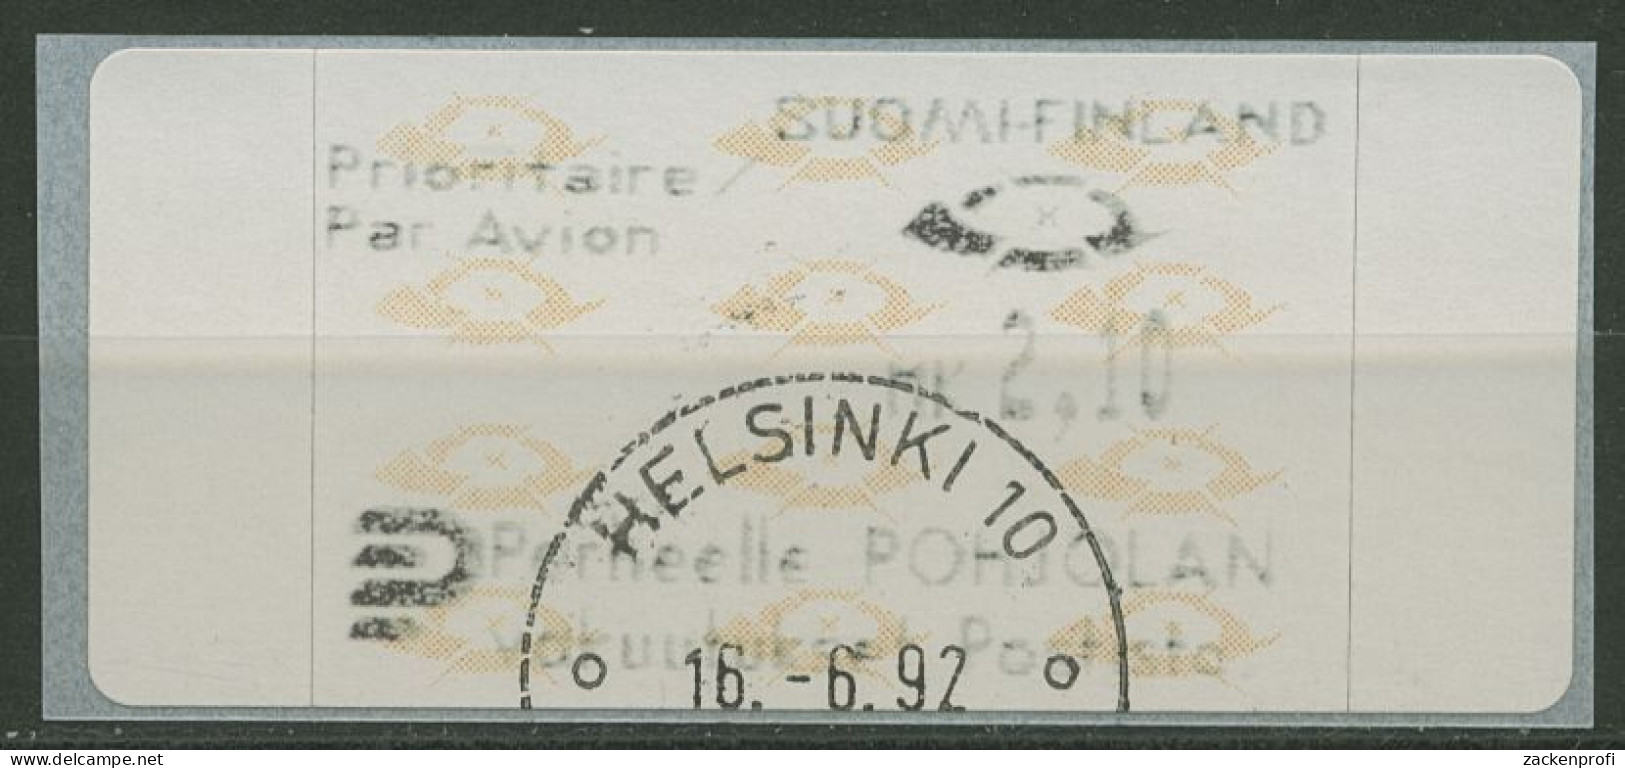 Finnland Automatenmarken 1992 Posthörner Einzelwert ATM 12.3 Z6 Gestempelt - Vignette [ATM]